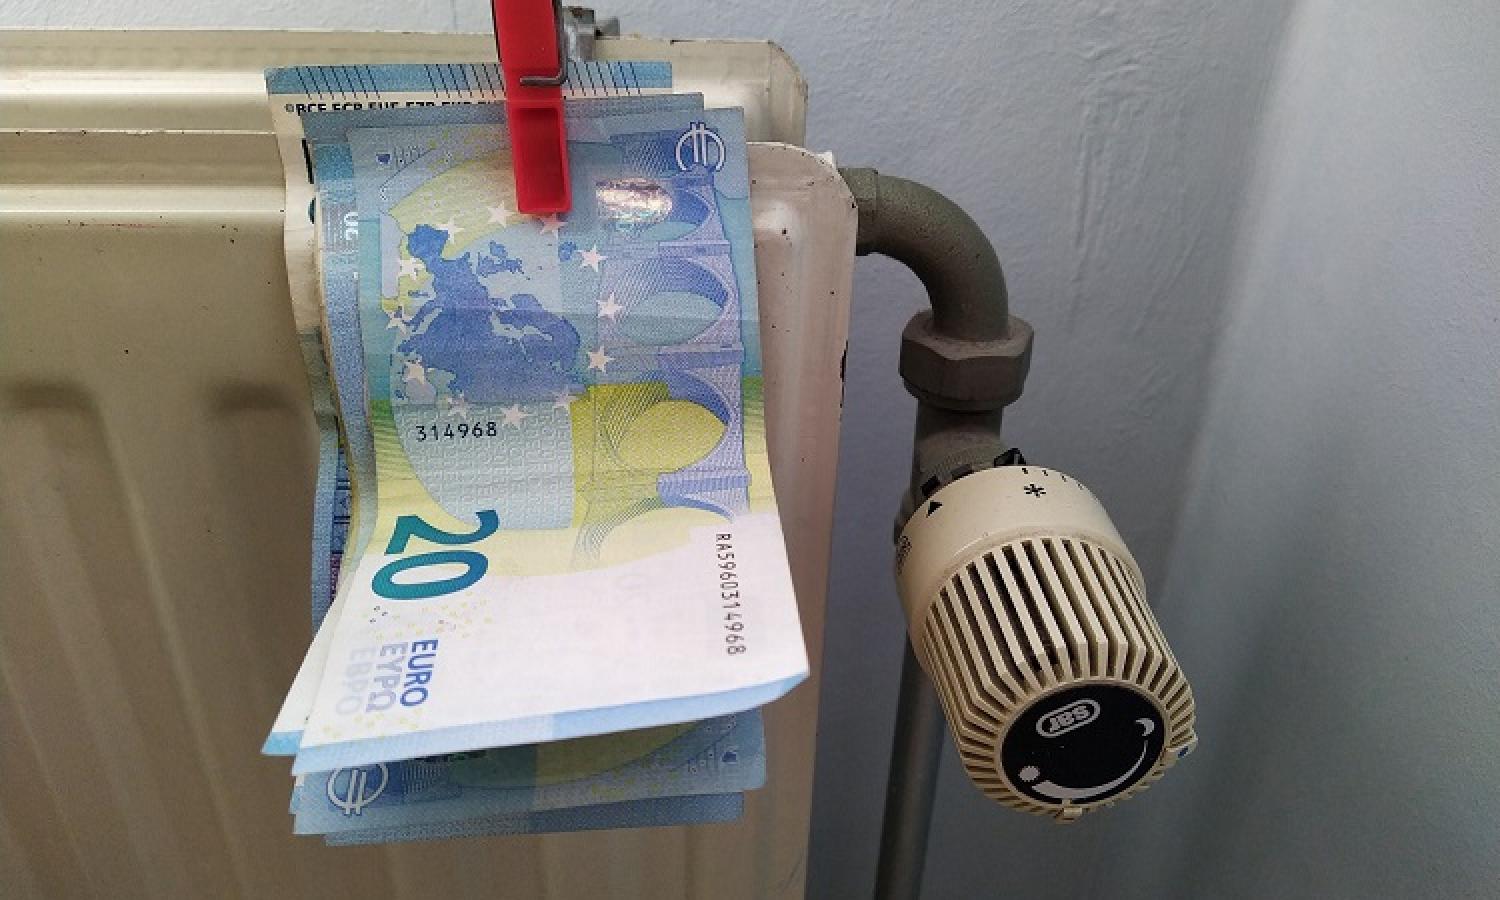 Bankbiljetten aan de verwarming met een wasknijper.